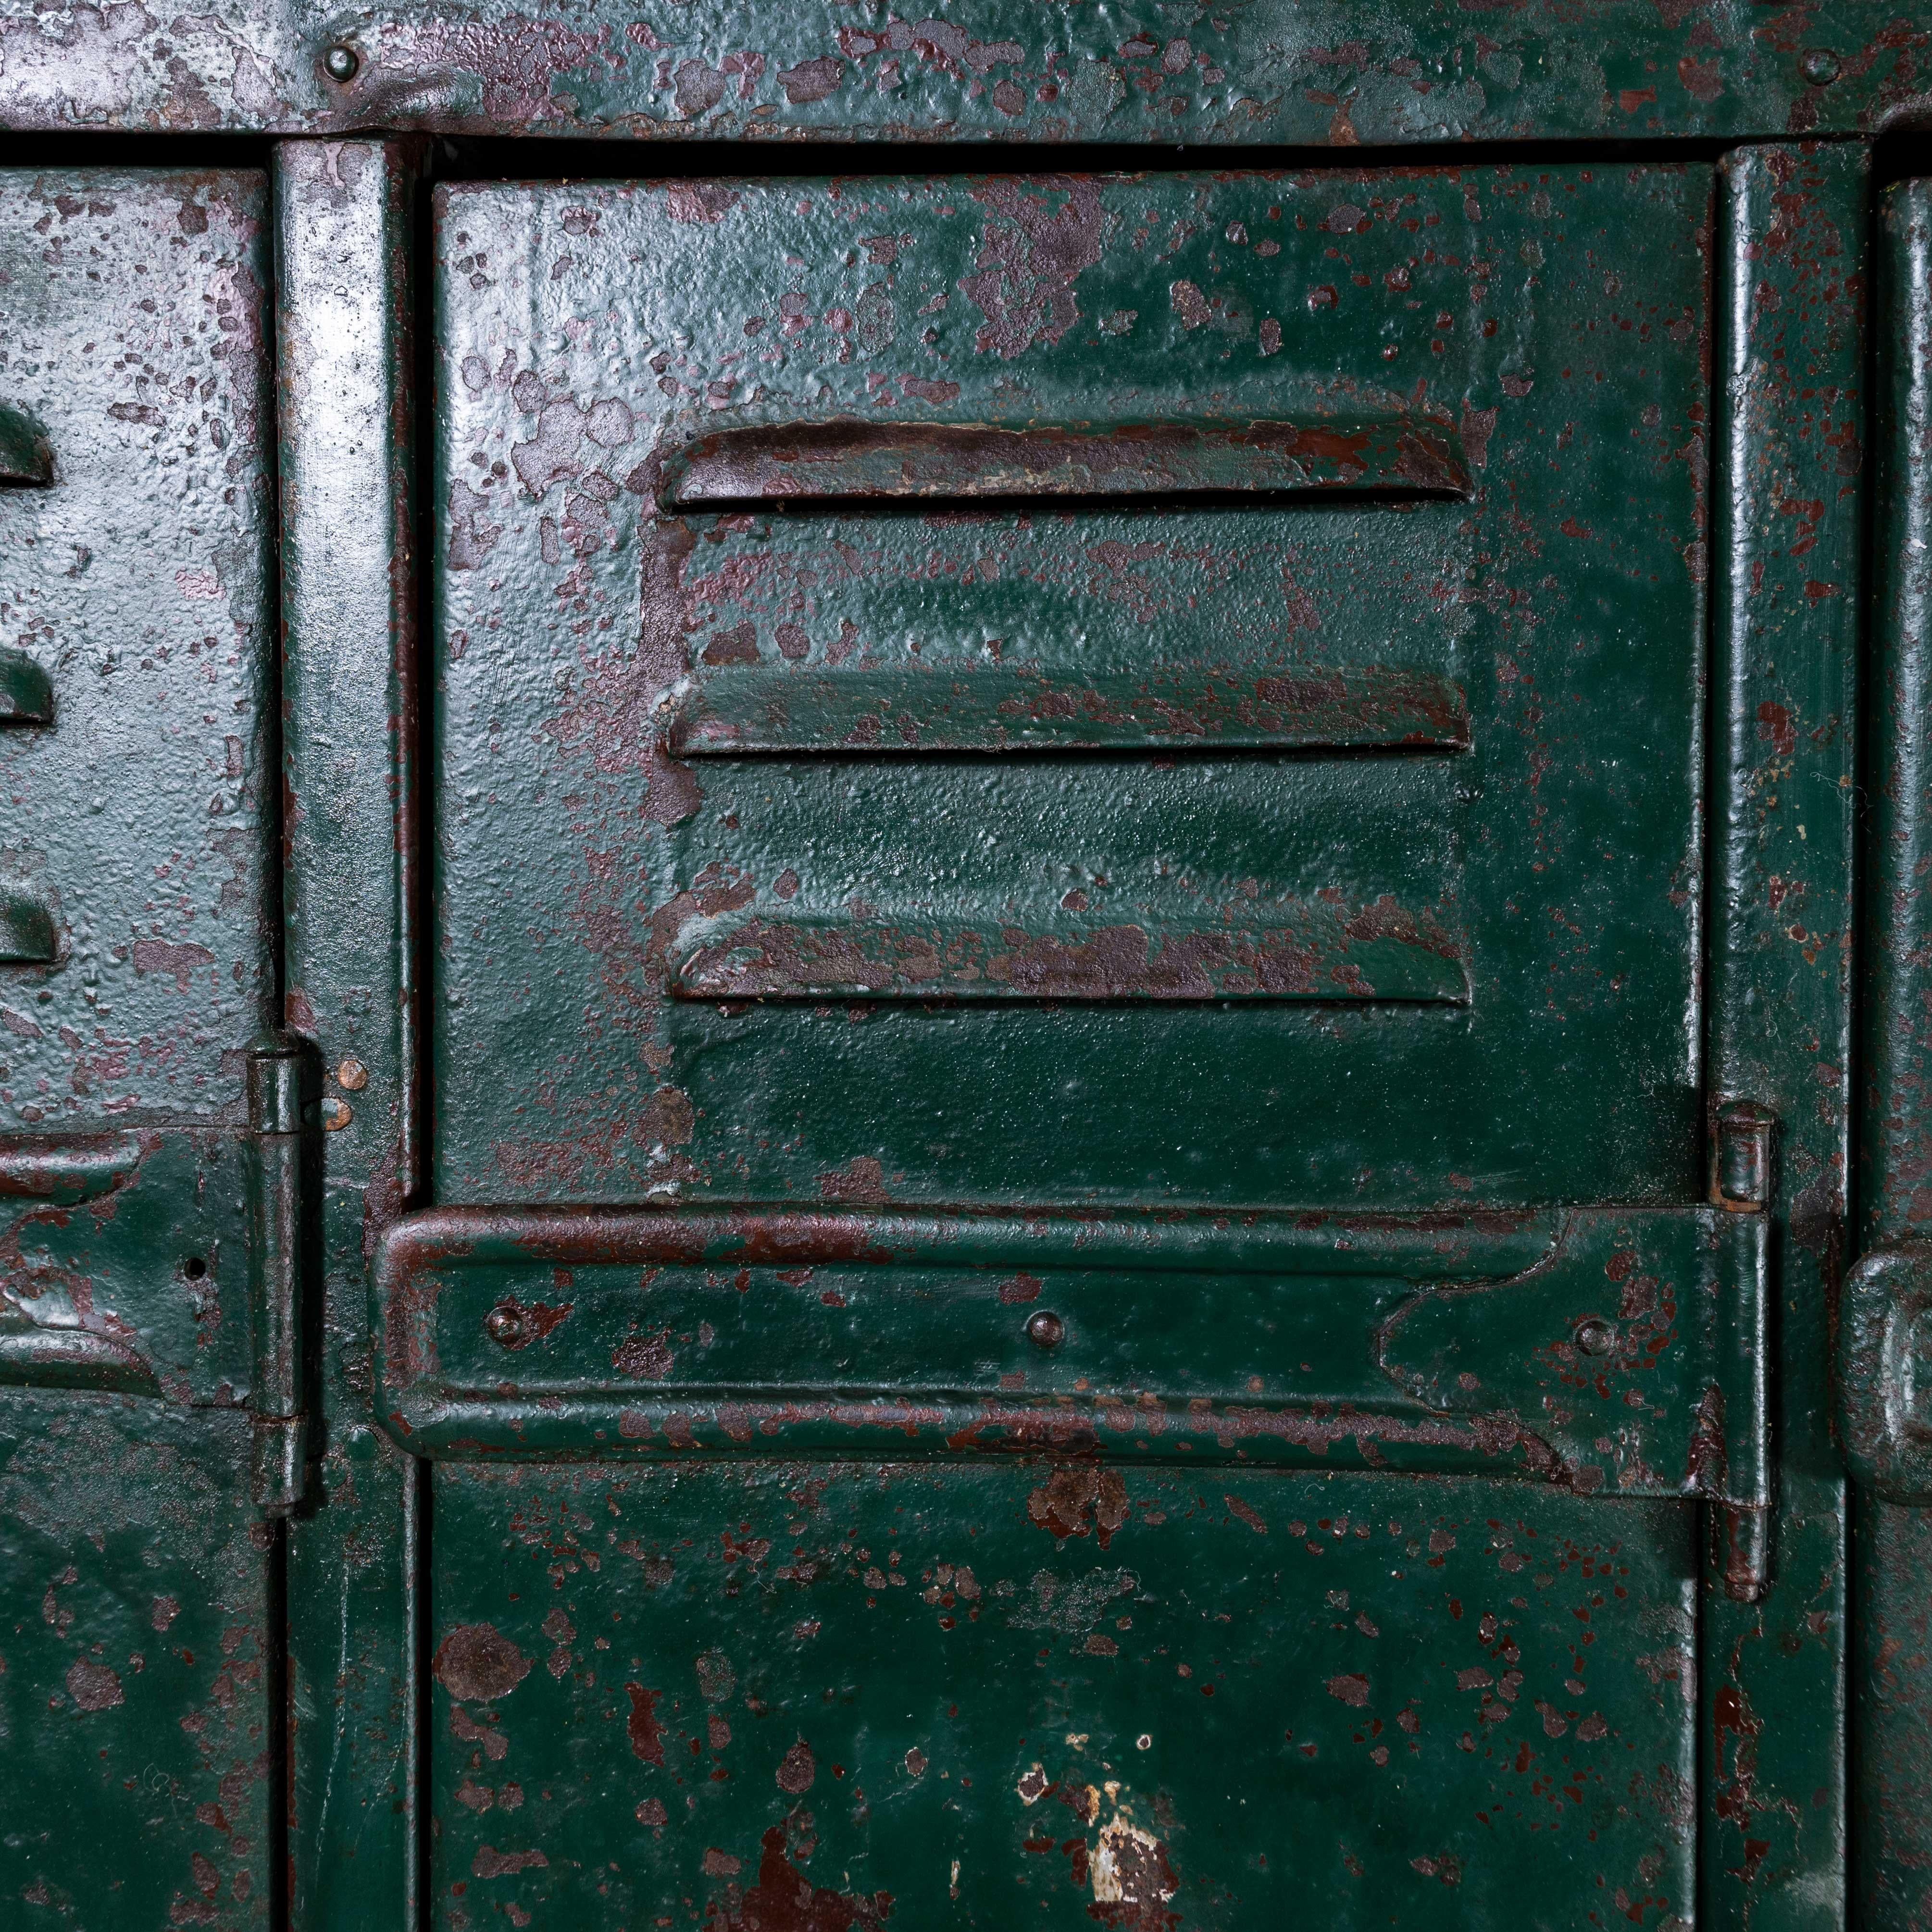 1940s Heavy Duty French Steel Industrial Locker, Four Door For Sale 7